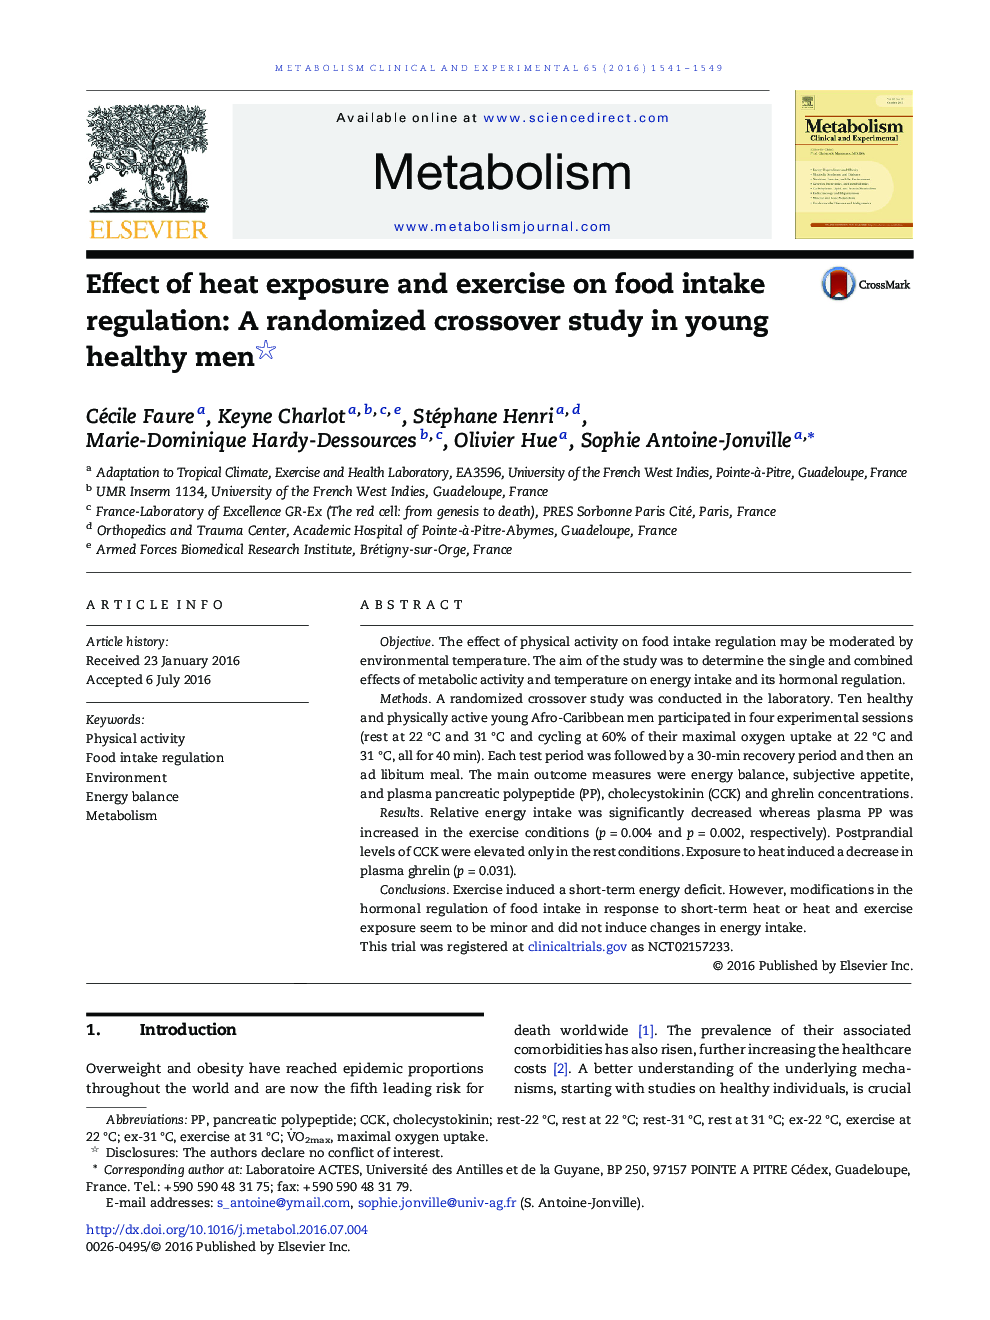 تأثیر قرار گرفتن در معرض گرما و تمرین بر تنظیم غذا خوردن غذا: یک مطالعه متقاطع تصادفی در مردان جوان سالم؟ 